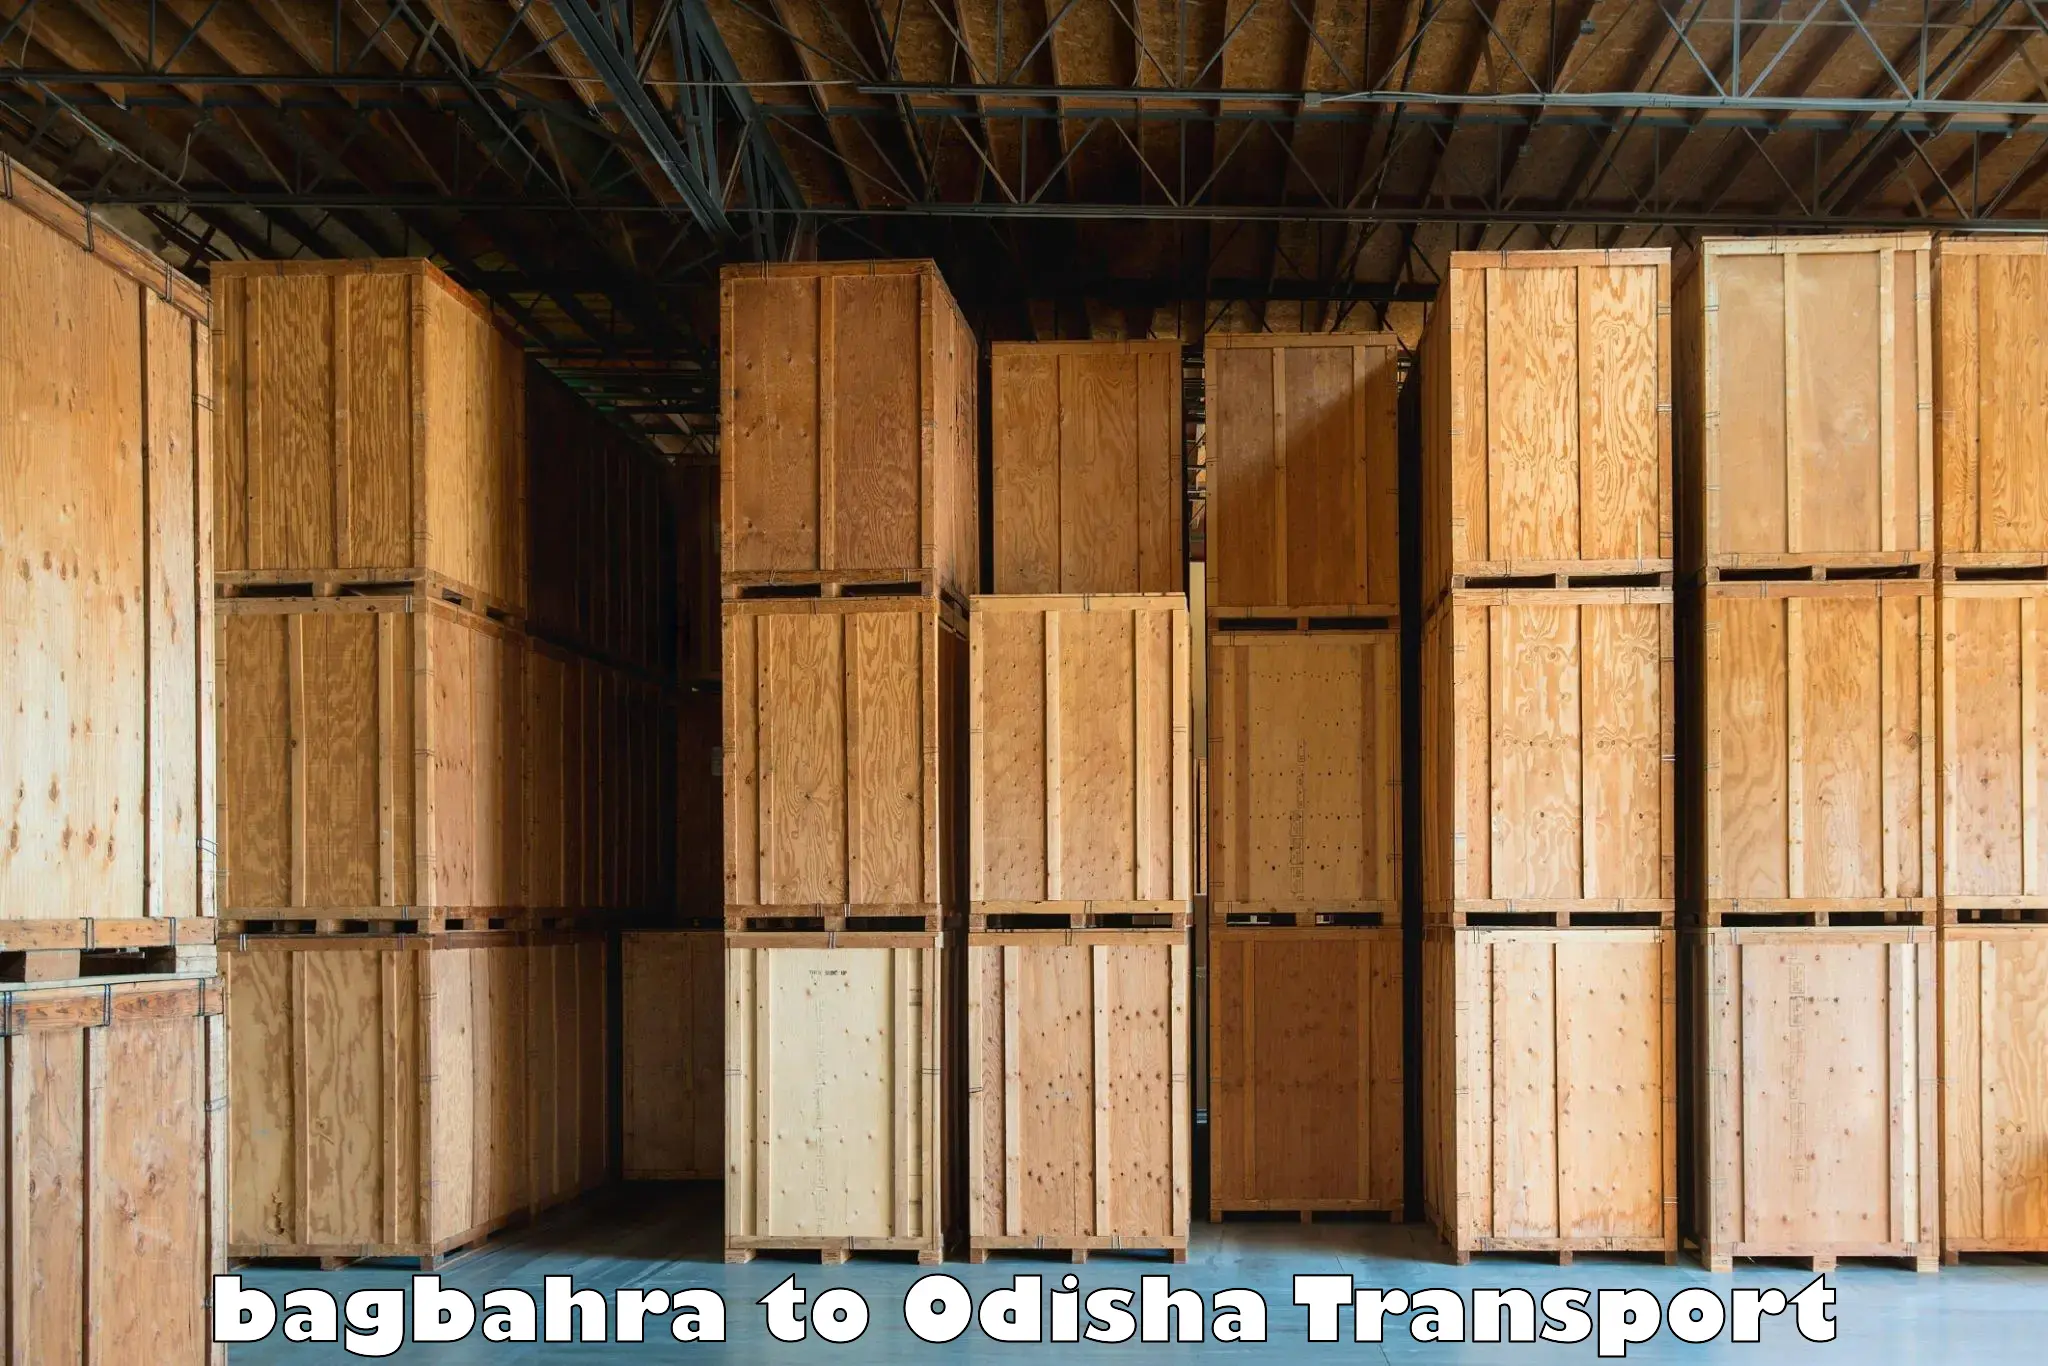 Vehicle parcel service bagbahra to Ukhunda